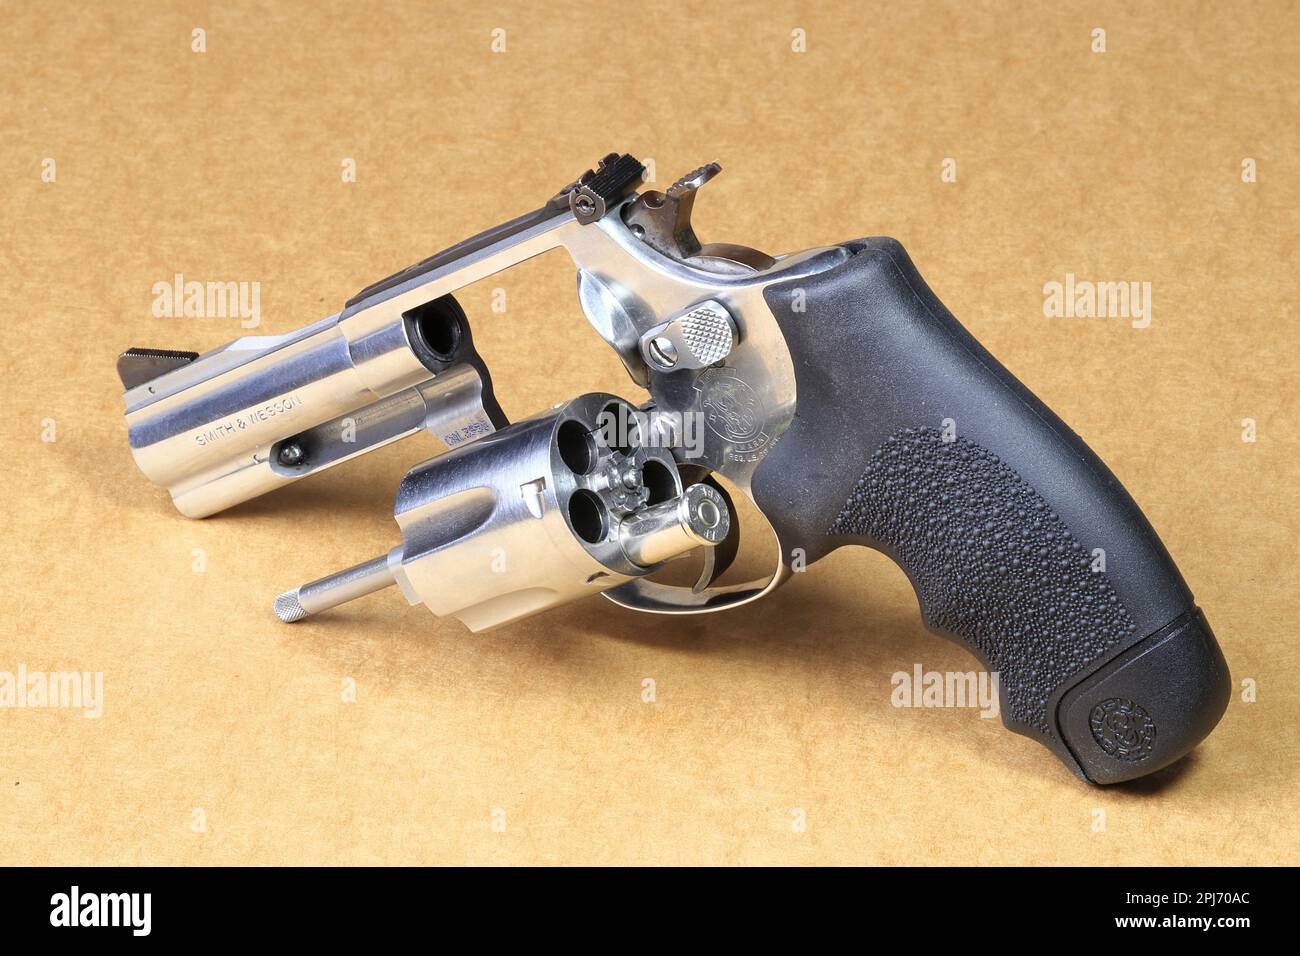 Die kompakte Revolverpistole, J-Rahmen aus Edelstahl, M60-Pistole, Vorderansicht links, offener Zylinder mit 1-ml-Runde, für den Einsatz im russischen Roulette-Spiel. Stockfoto